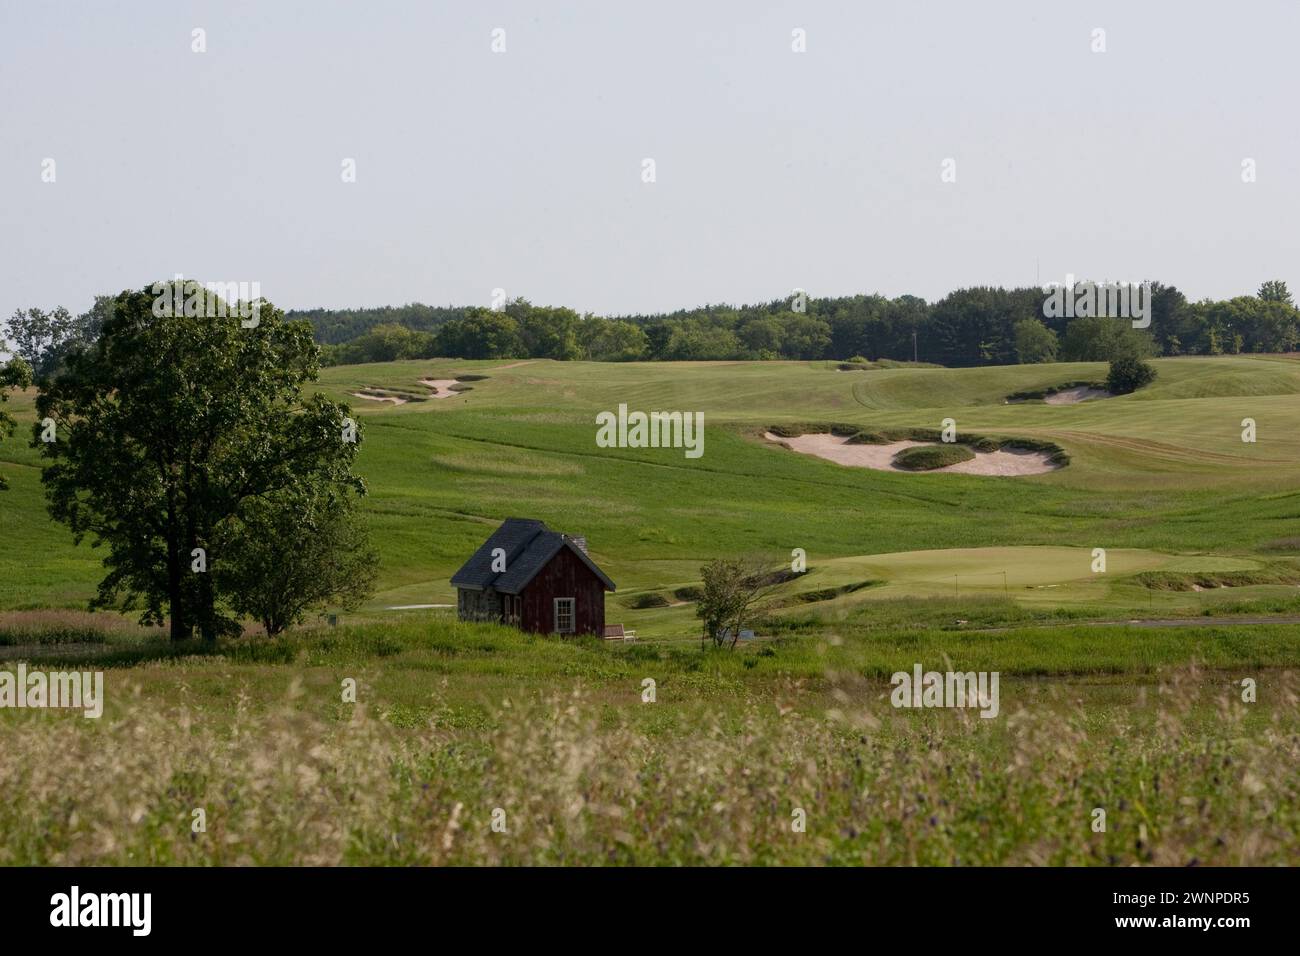 L'Erin Hills Golf Course, un campo ondulato e aspro di Erin, Wisconsin, ospita gli US Open del 2017 e dispone di un par 3, 19 buche che può essere incorpo Foto Stock